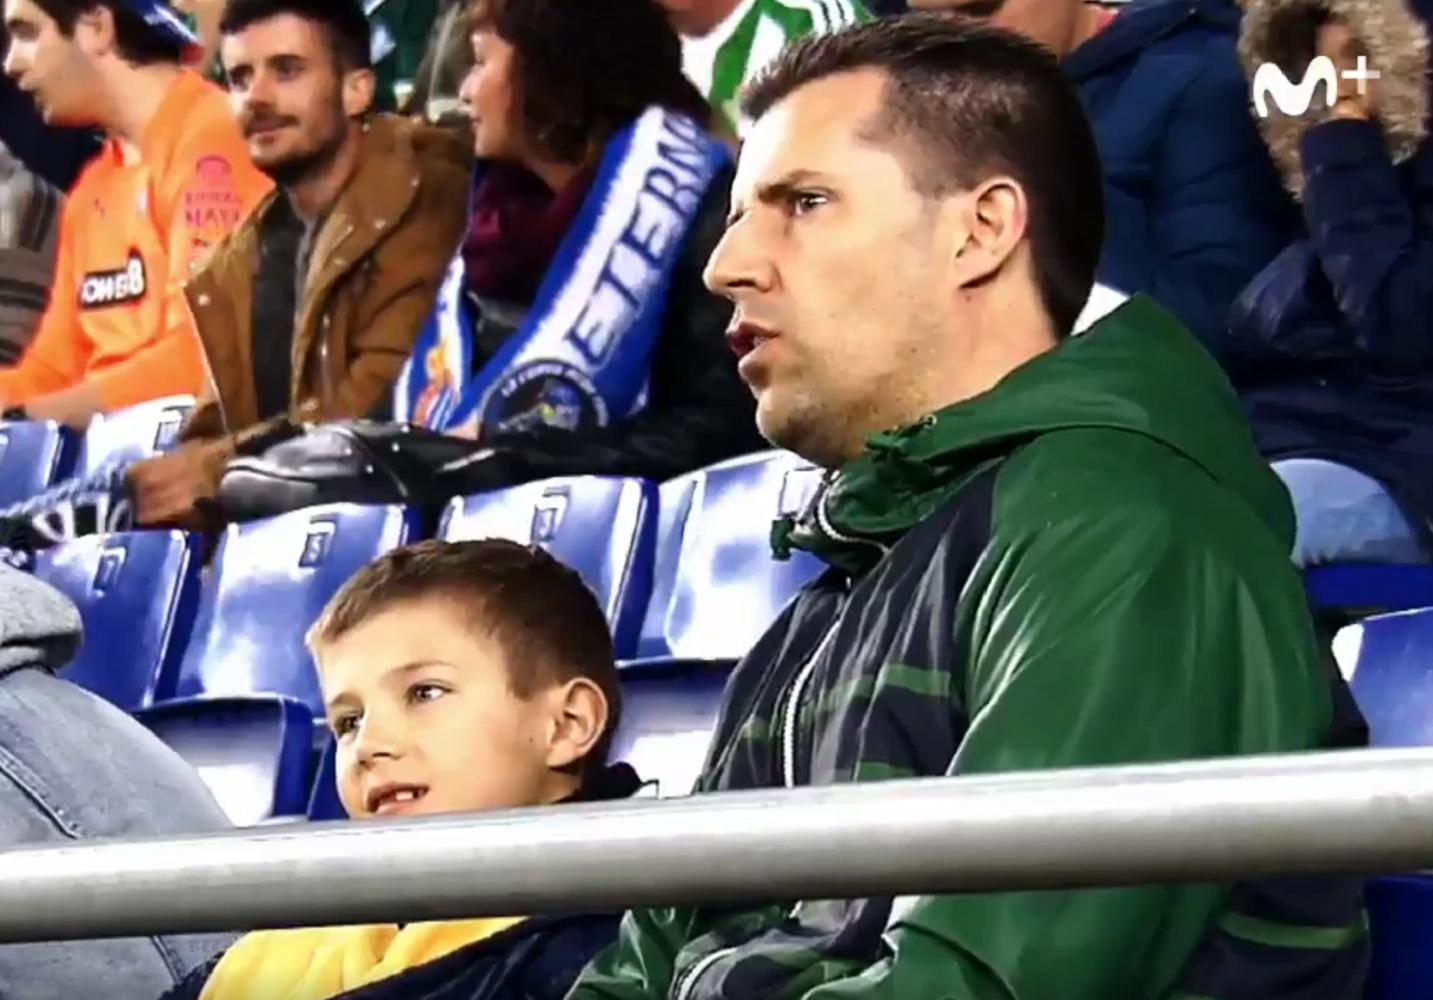 La xarxa aplaudeix aquest pare i fill per 'practicar' futbol sa